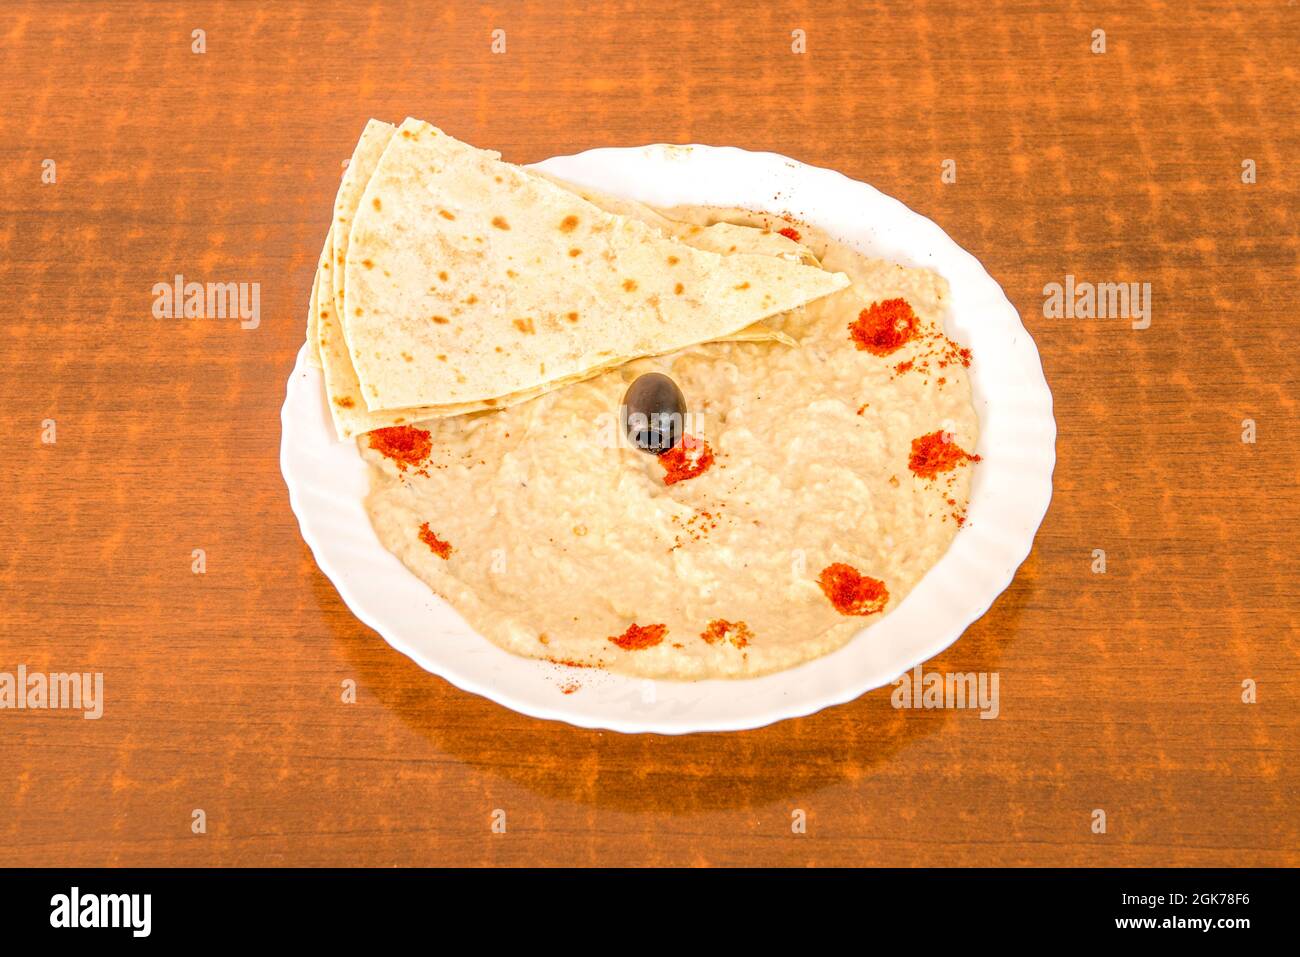 baba ganoush avec pain pita, olives noires et paprika sur une assiette blanche Banque D'Images